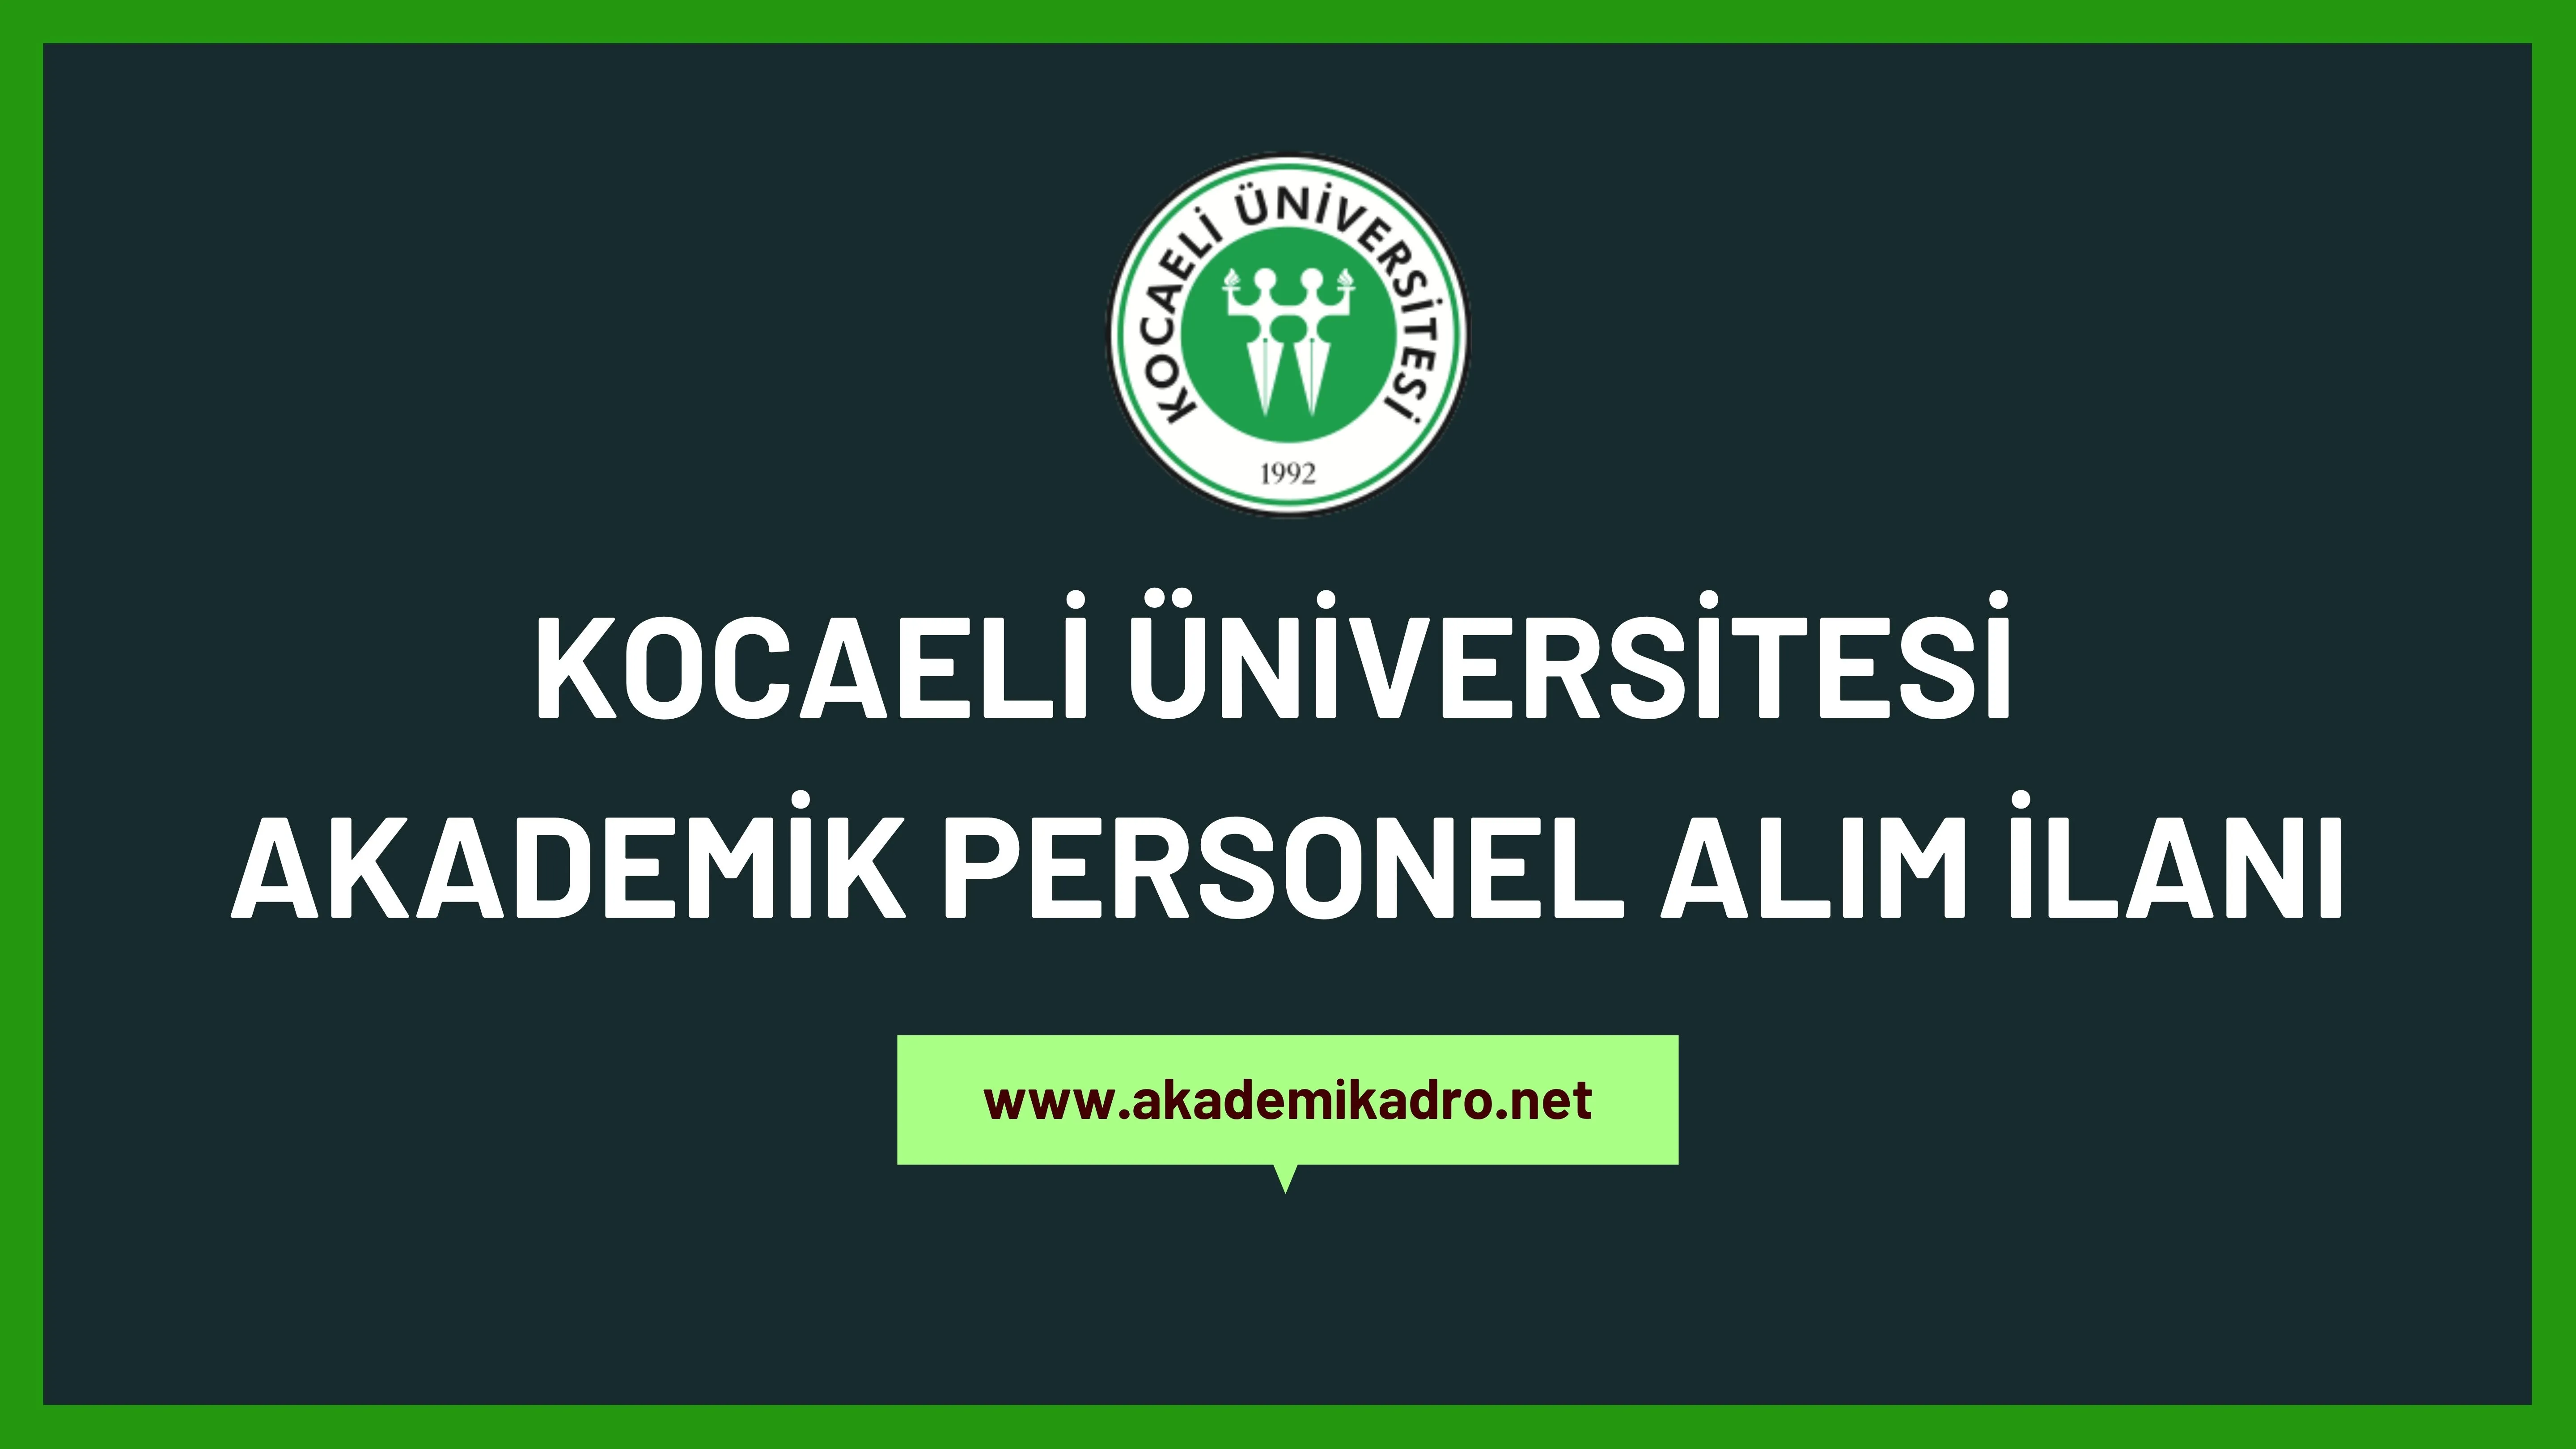 Kocaeli Üniversitesi birçok alandan 60 akademik personel alacak.